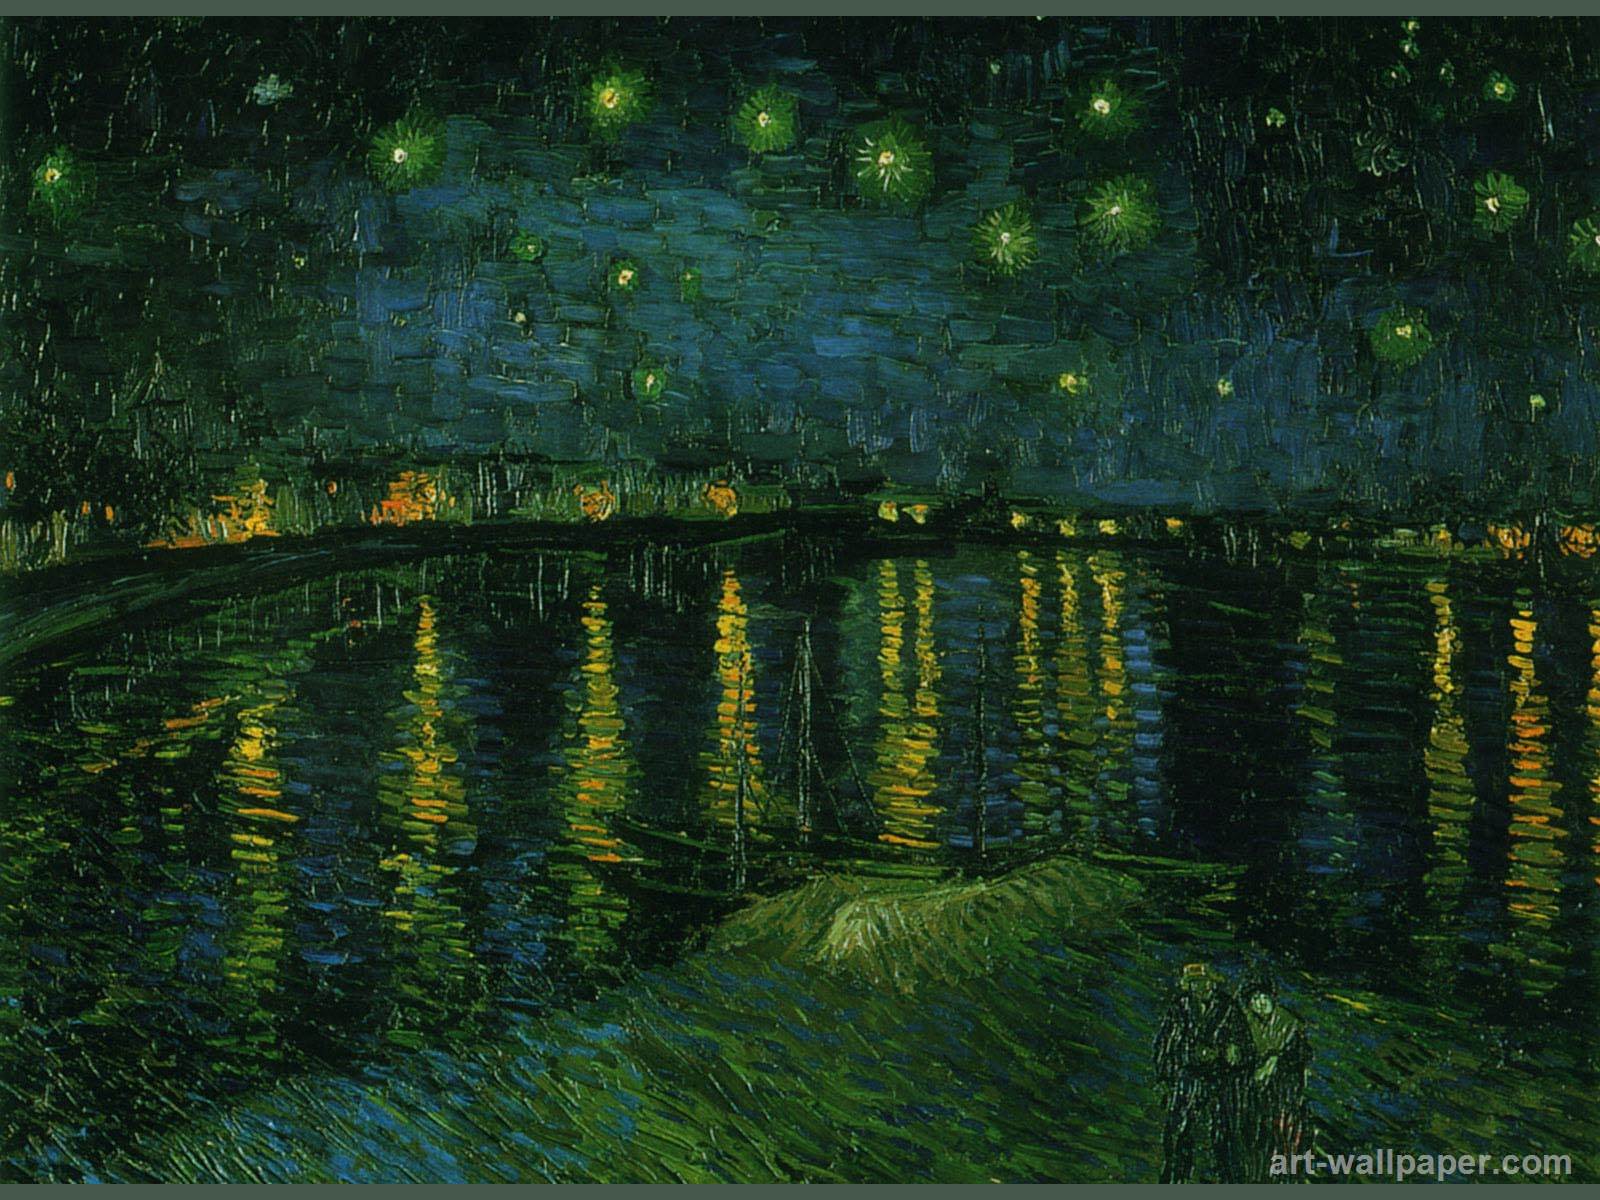 Vincent Van Gogh Starry Night Desktop Wallpaper